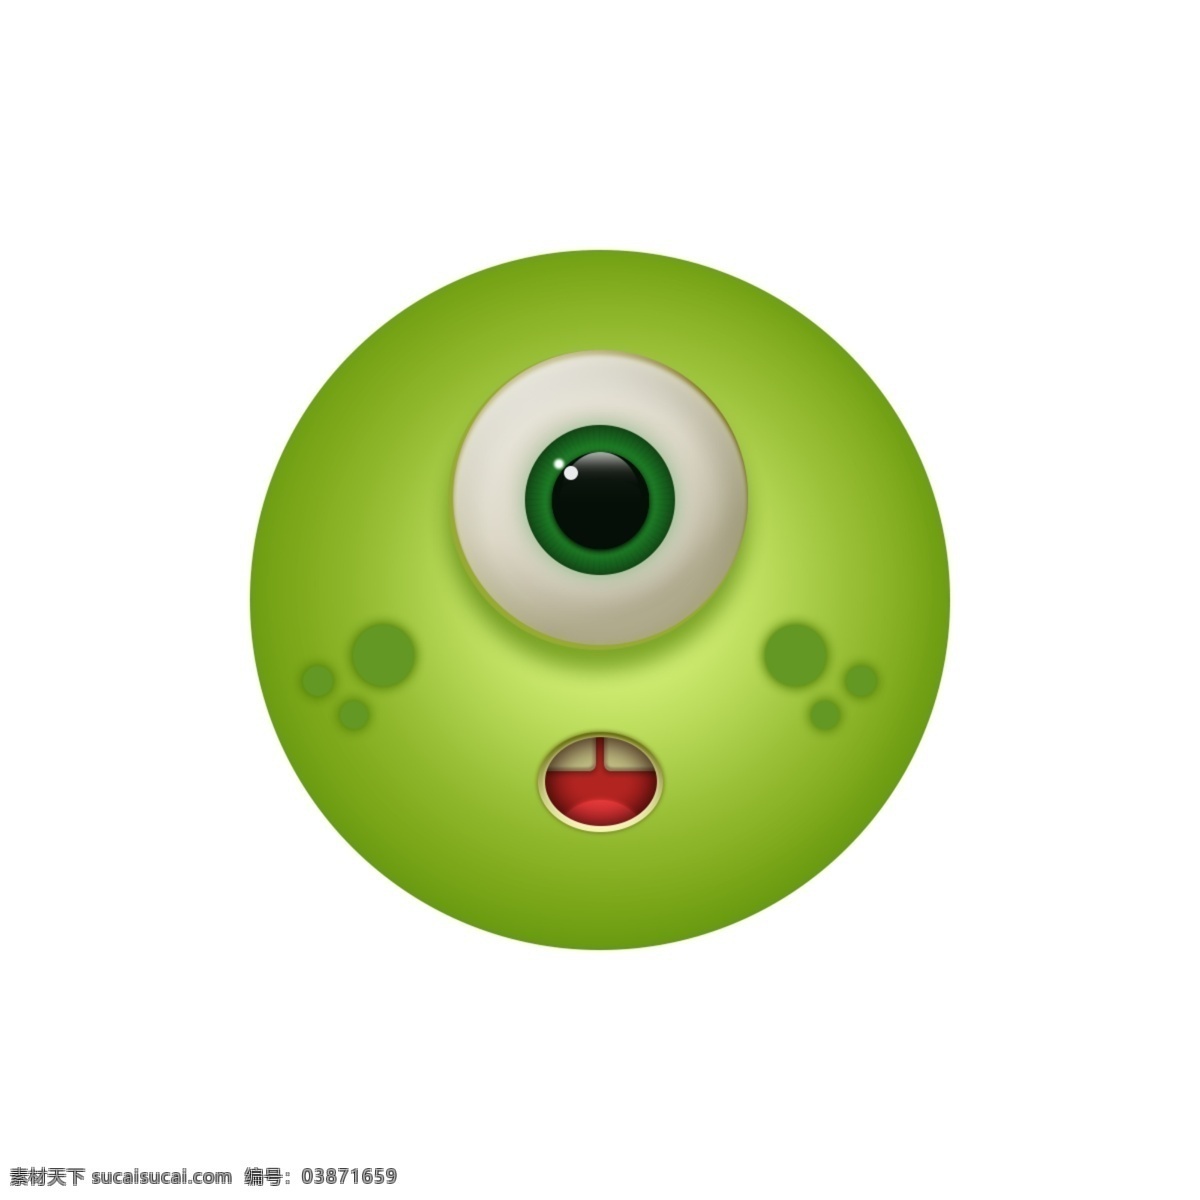 绿脸图标怪兽 app图标 手机主题图标 小怪兽 icon图标 icon 图标 可爱 自信 表情 绿色